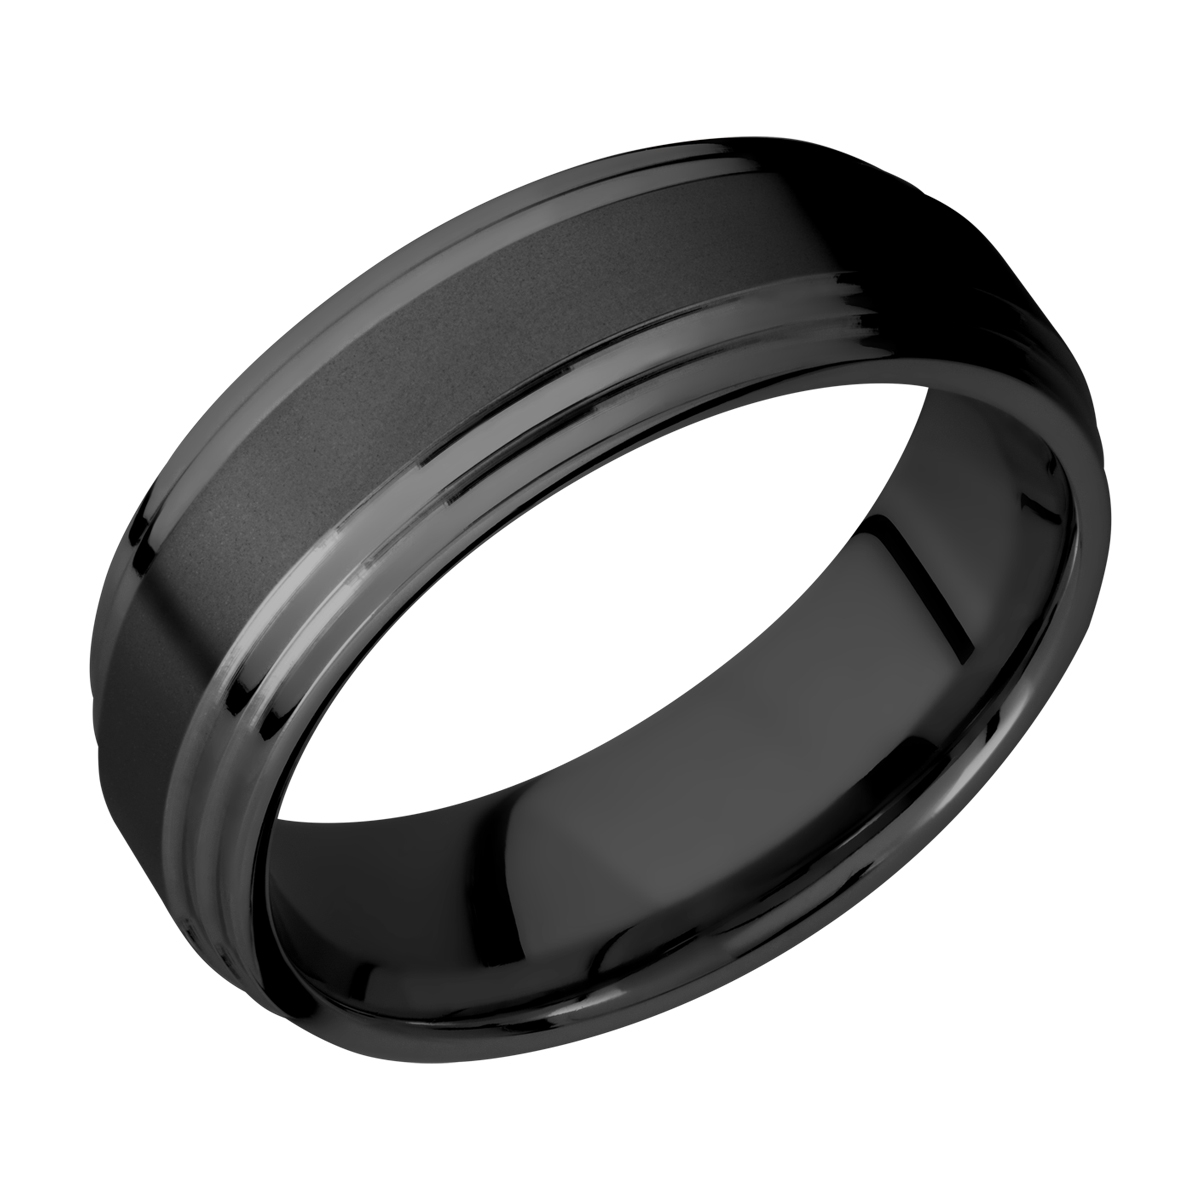 Lashbrook Z7F2S Zirconium Wedding Ring or Band